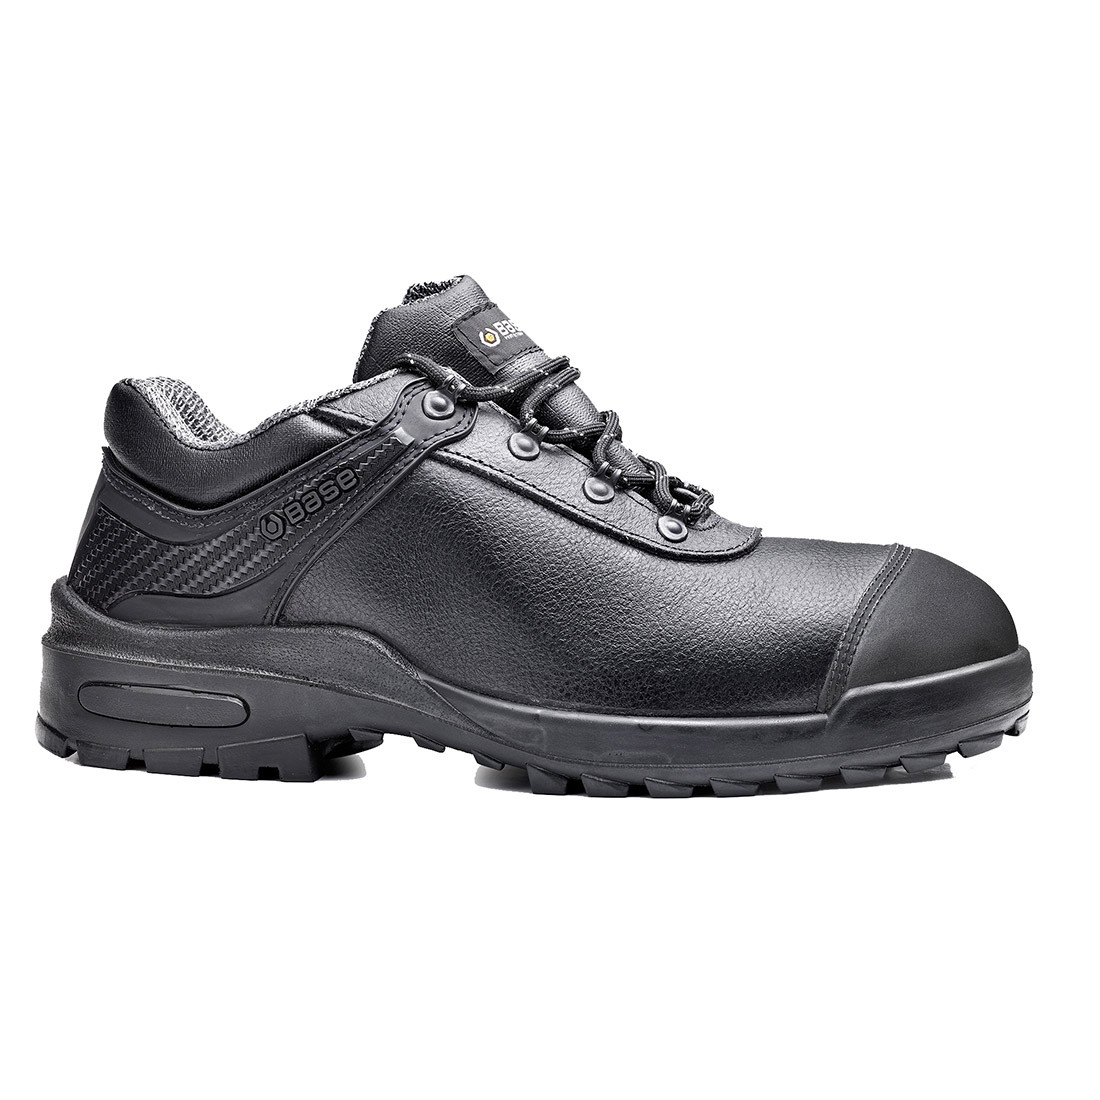 Curtis Shoe S3 SRC - Les chaussures de protection